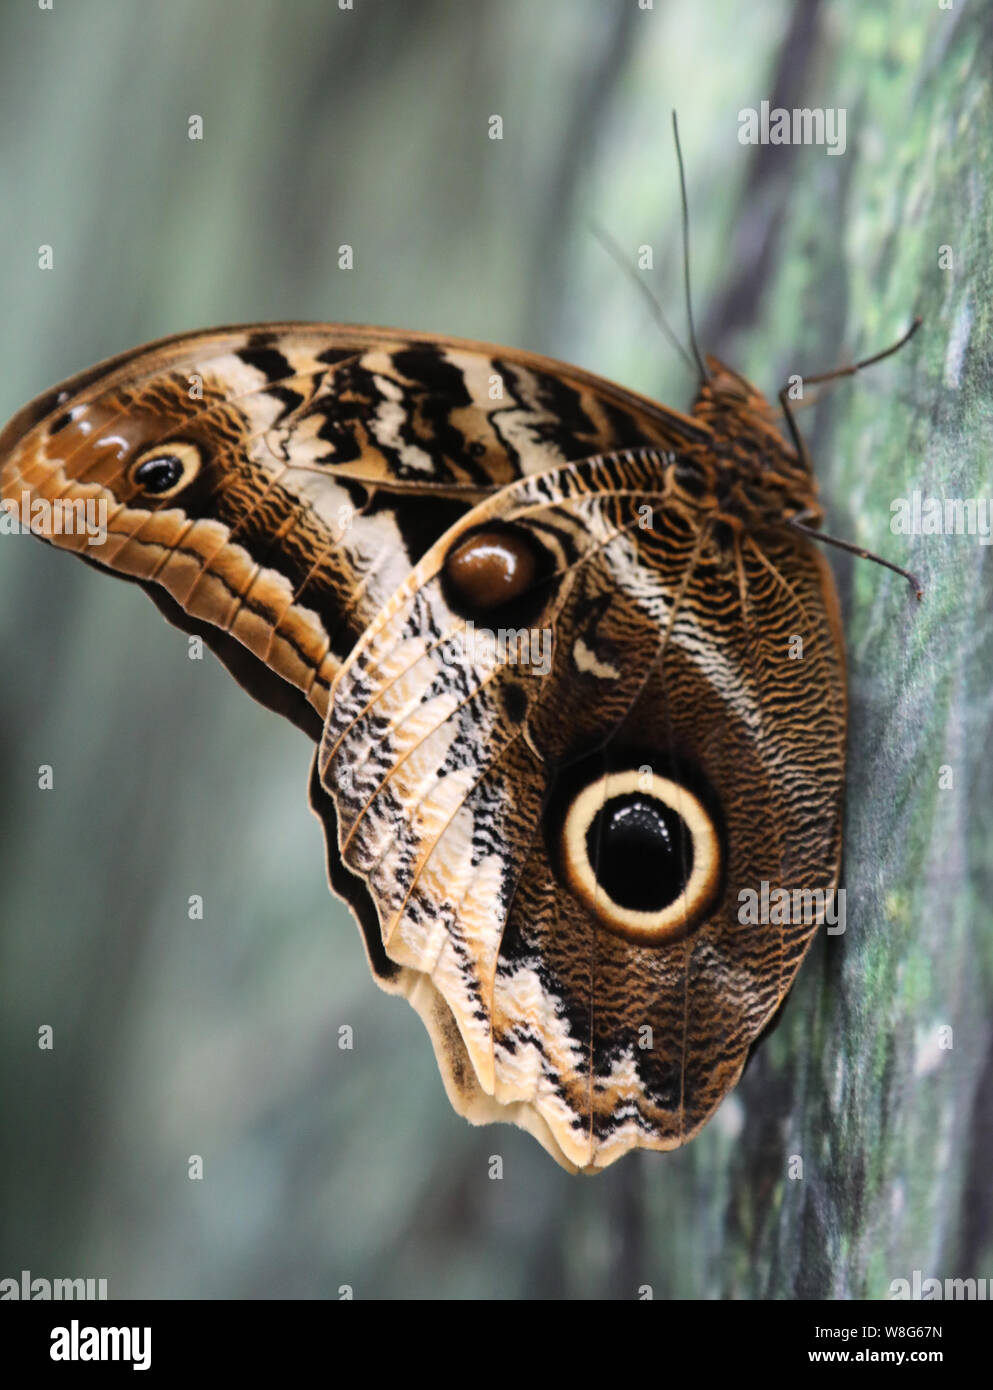 Saturnia Josephinae, la mariposa con falsos ojos en las alas